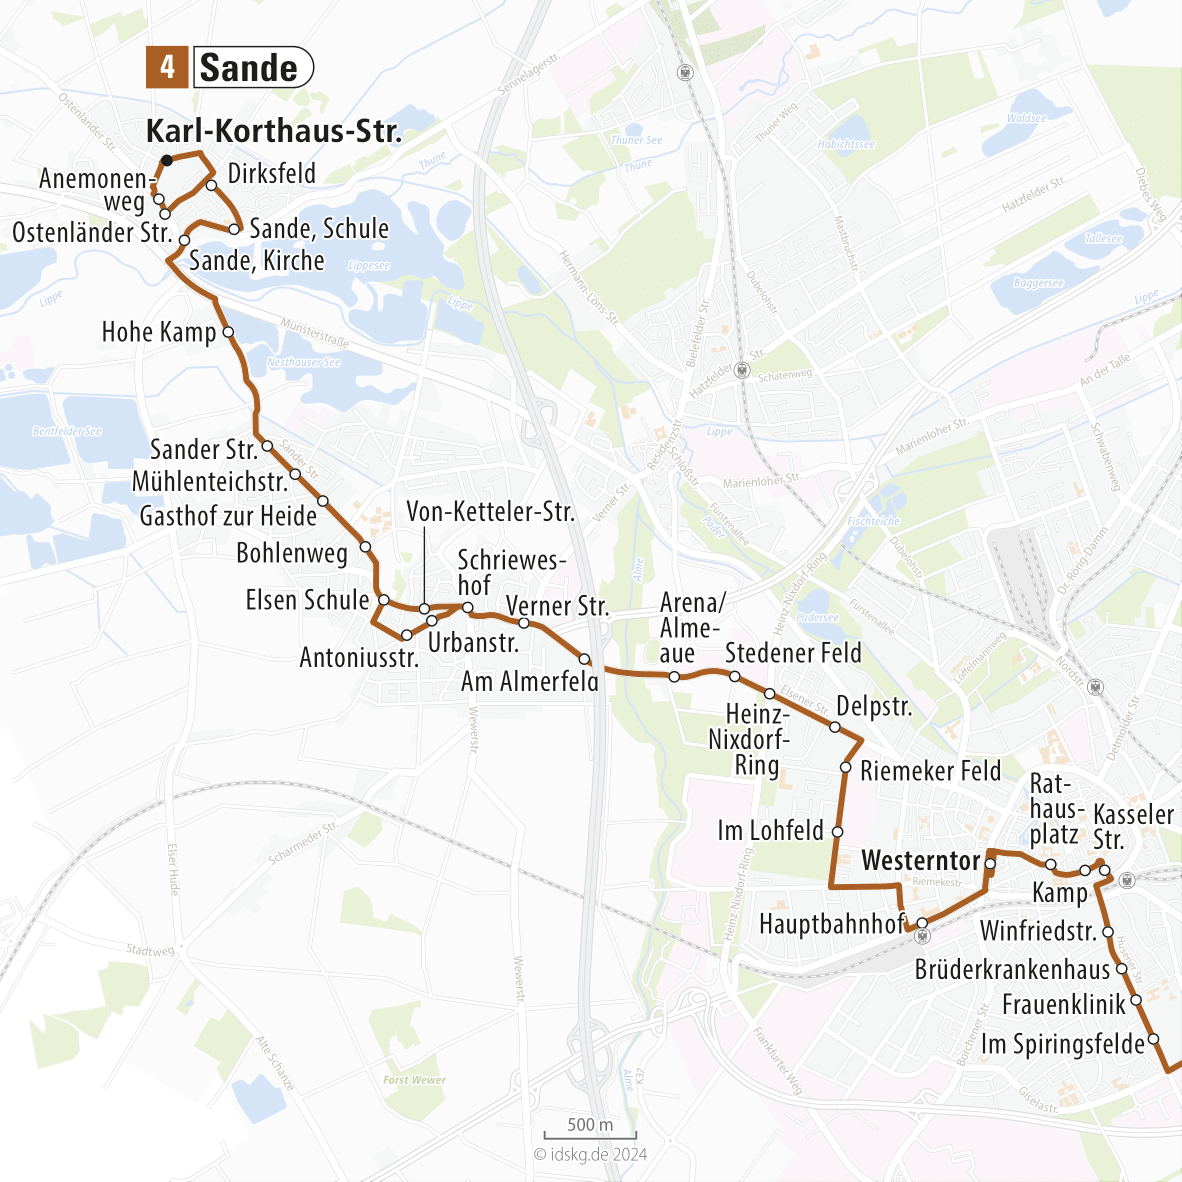 Kartenausschnitt der Linie 4 Sande bis Innenstadt 15x15